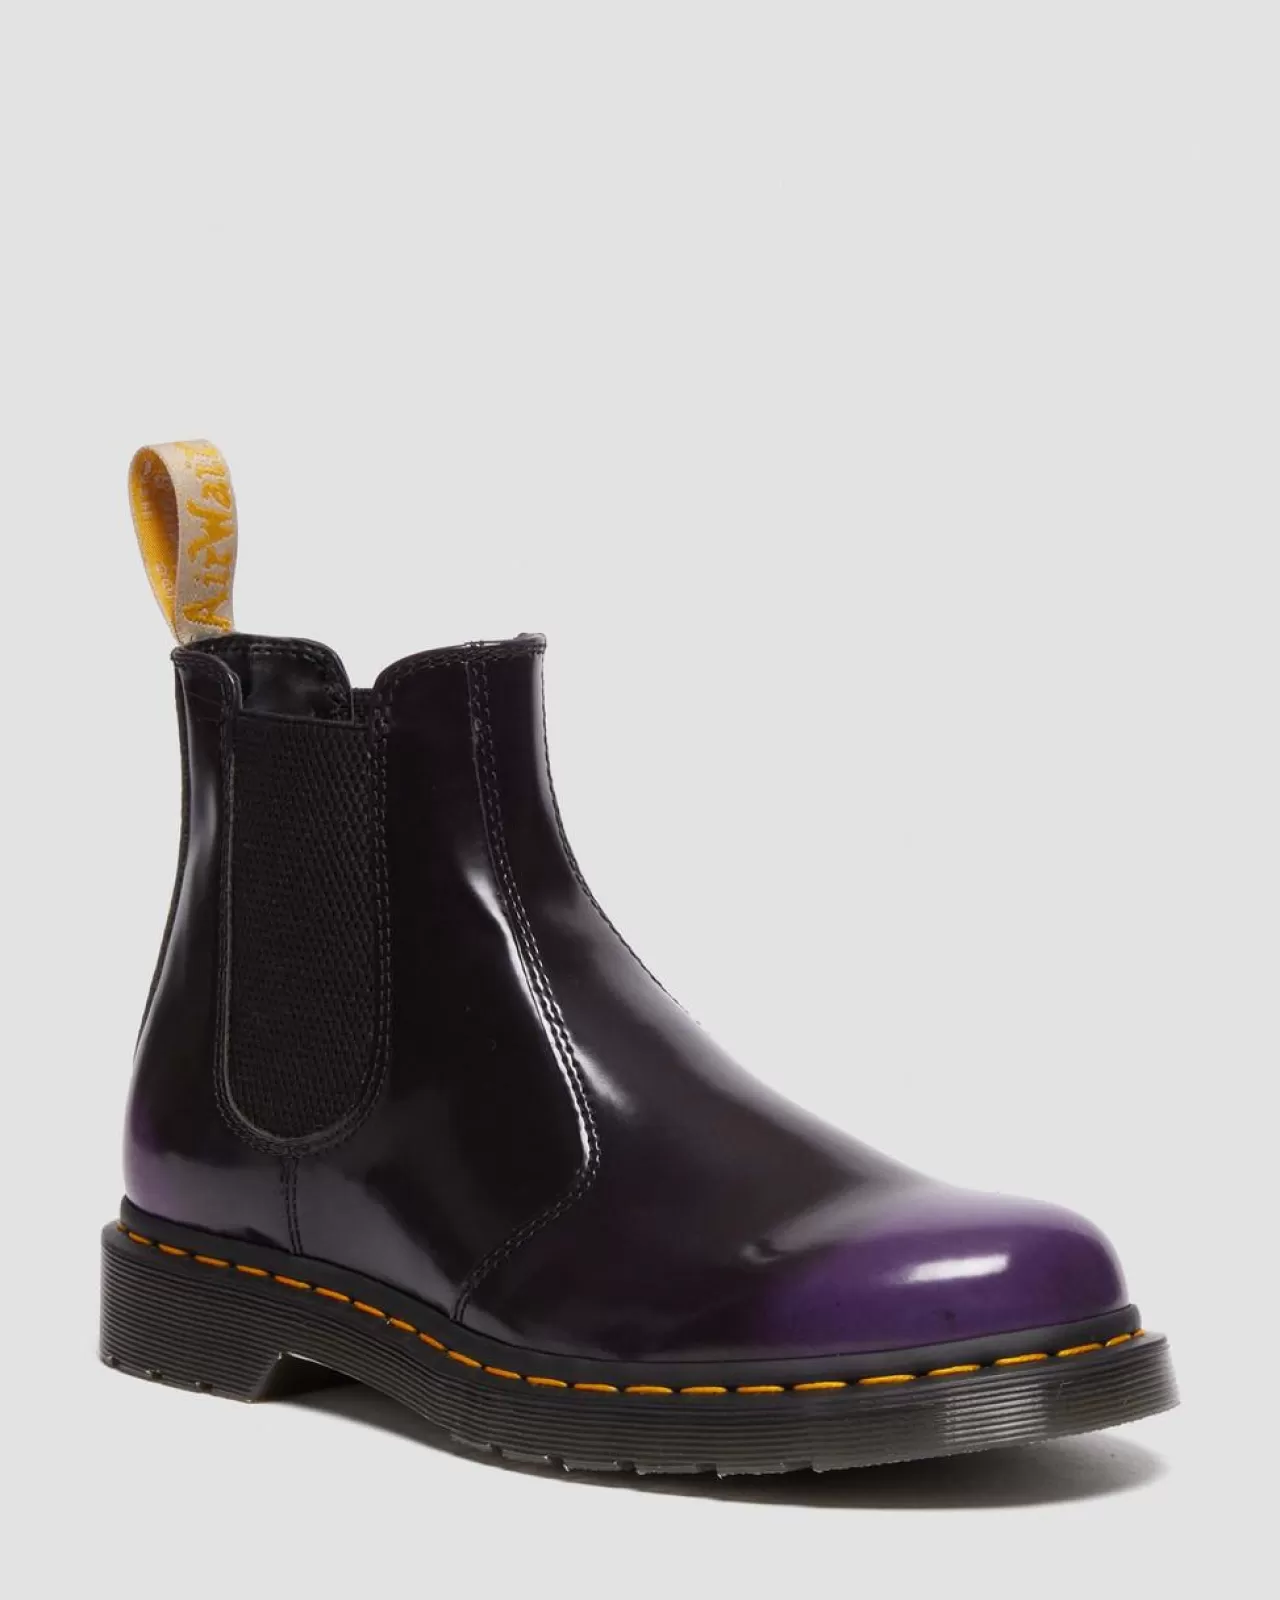 Sale | Vegan^Dr. Martens Vegan 2976 Chelsea Boots BLACK/RICH PURPLE — Oxford Rub Off